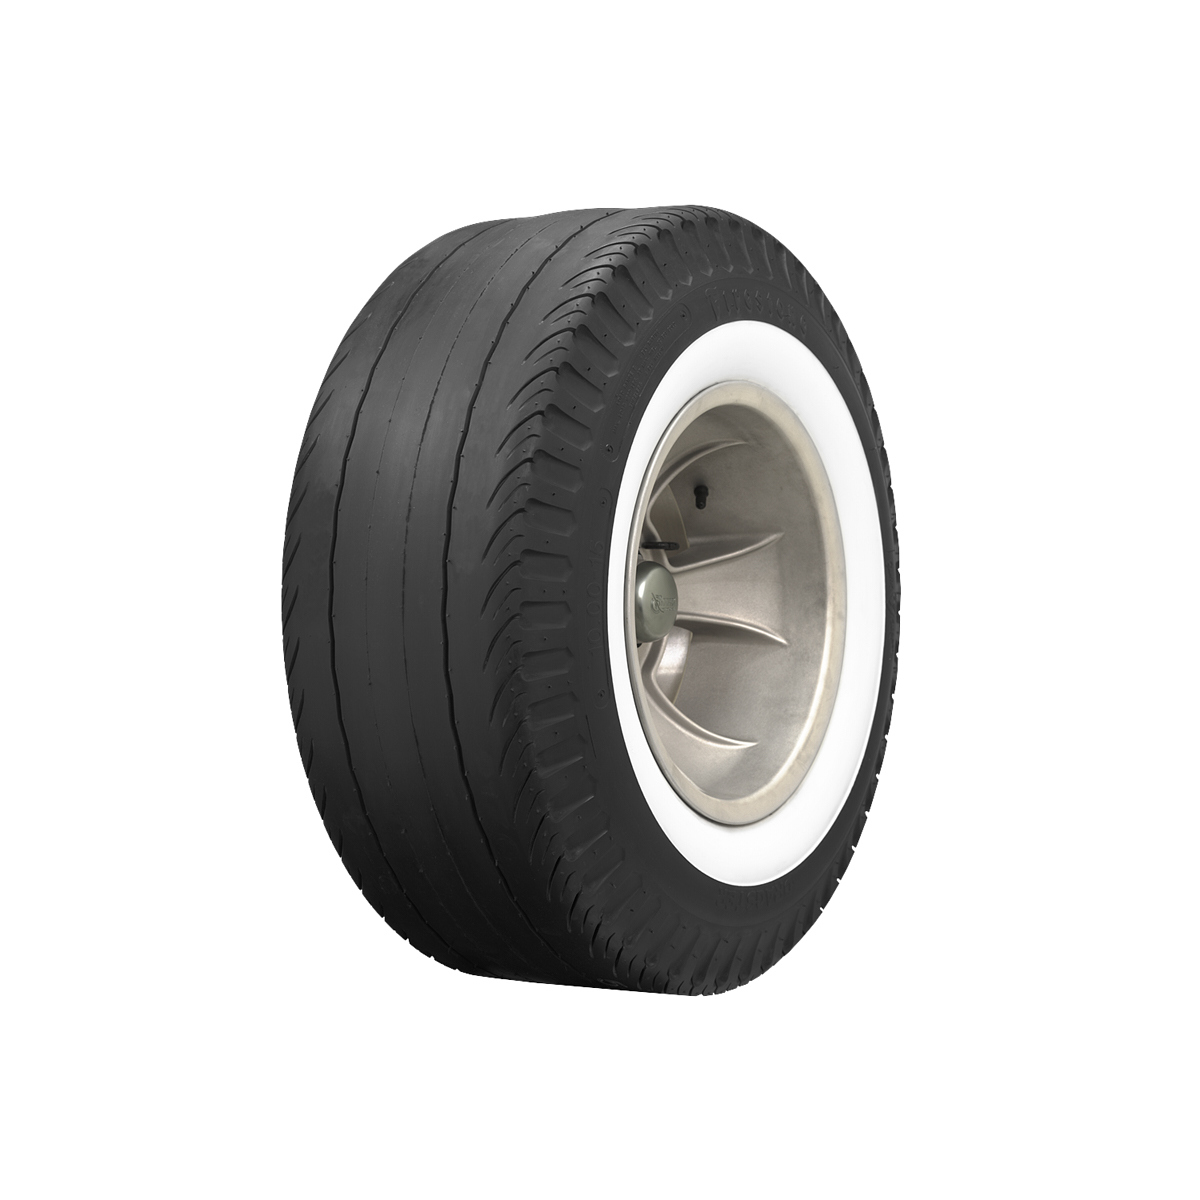 820-15 Firestone Tire Drag 2-1/4in Whitewall